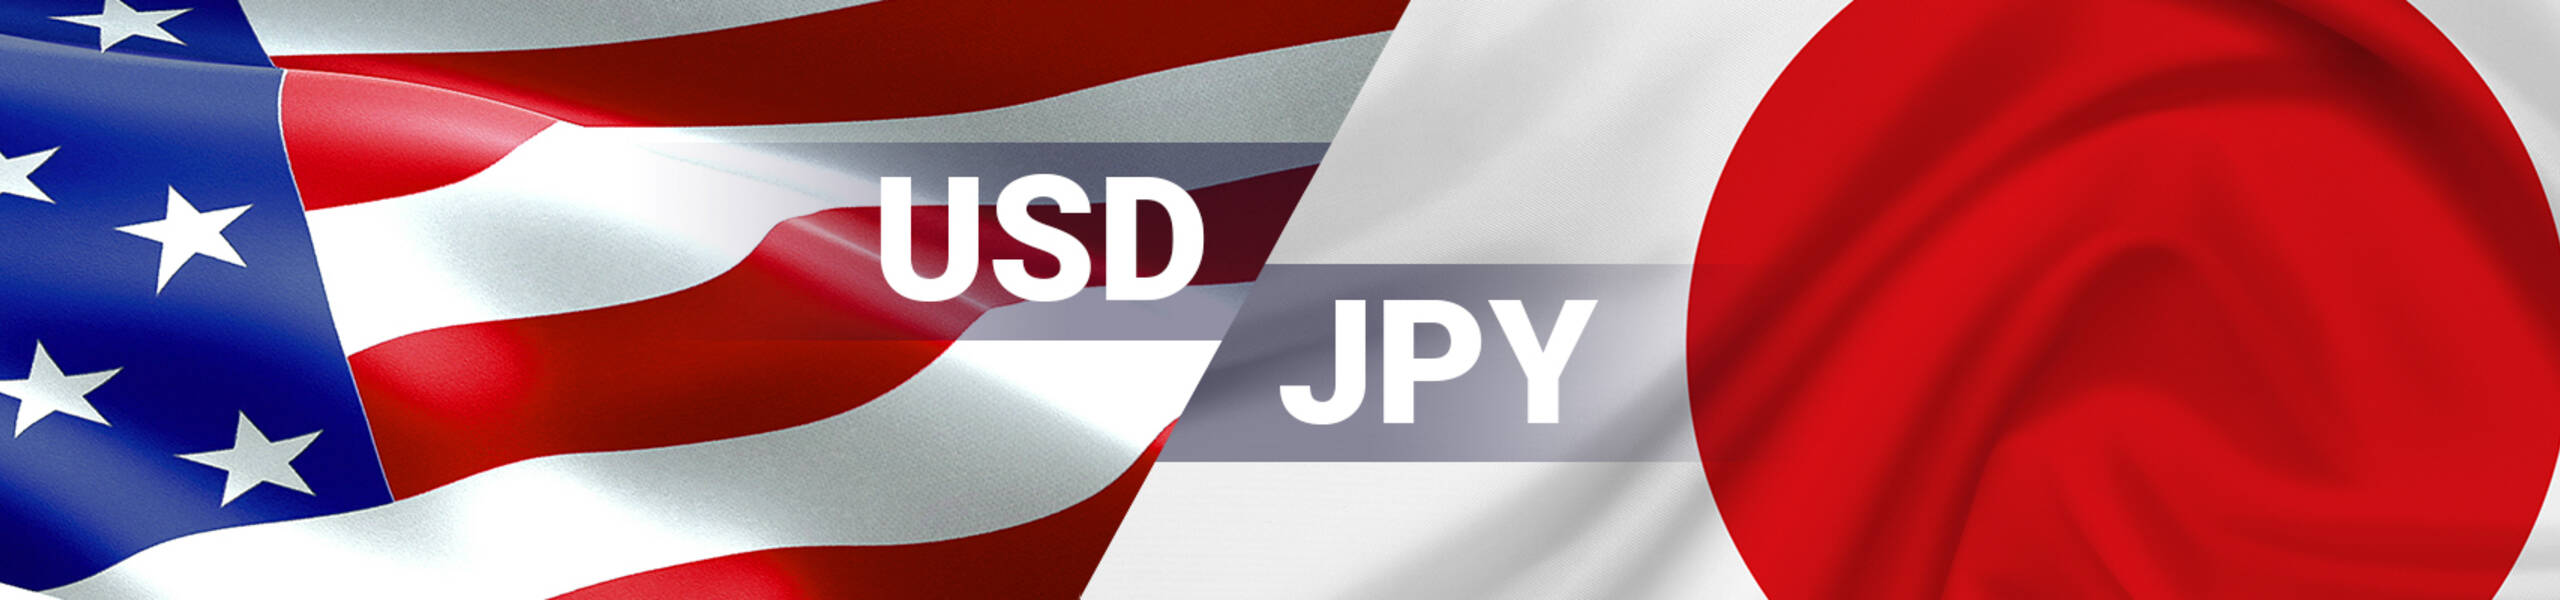 USD/JPY: Dollar may go lower